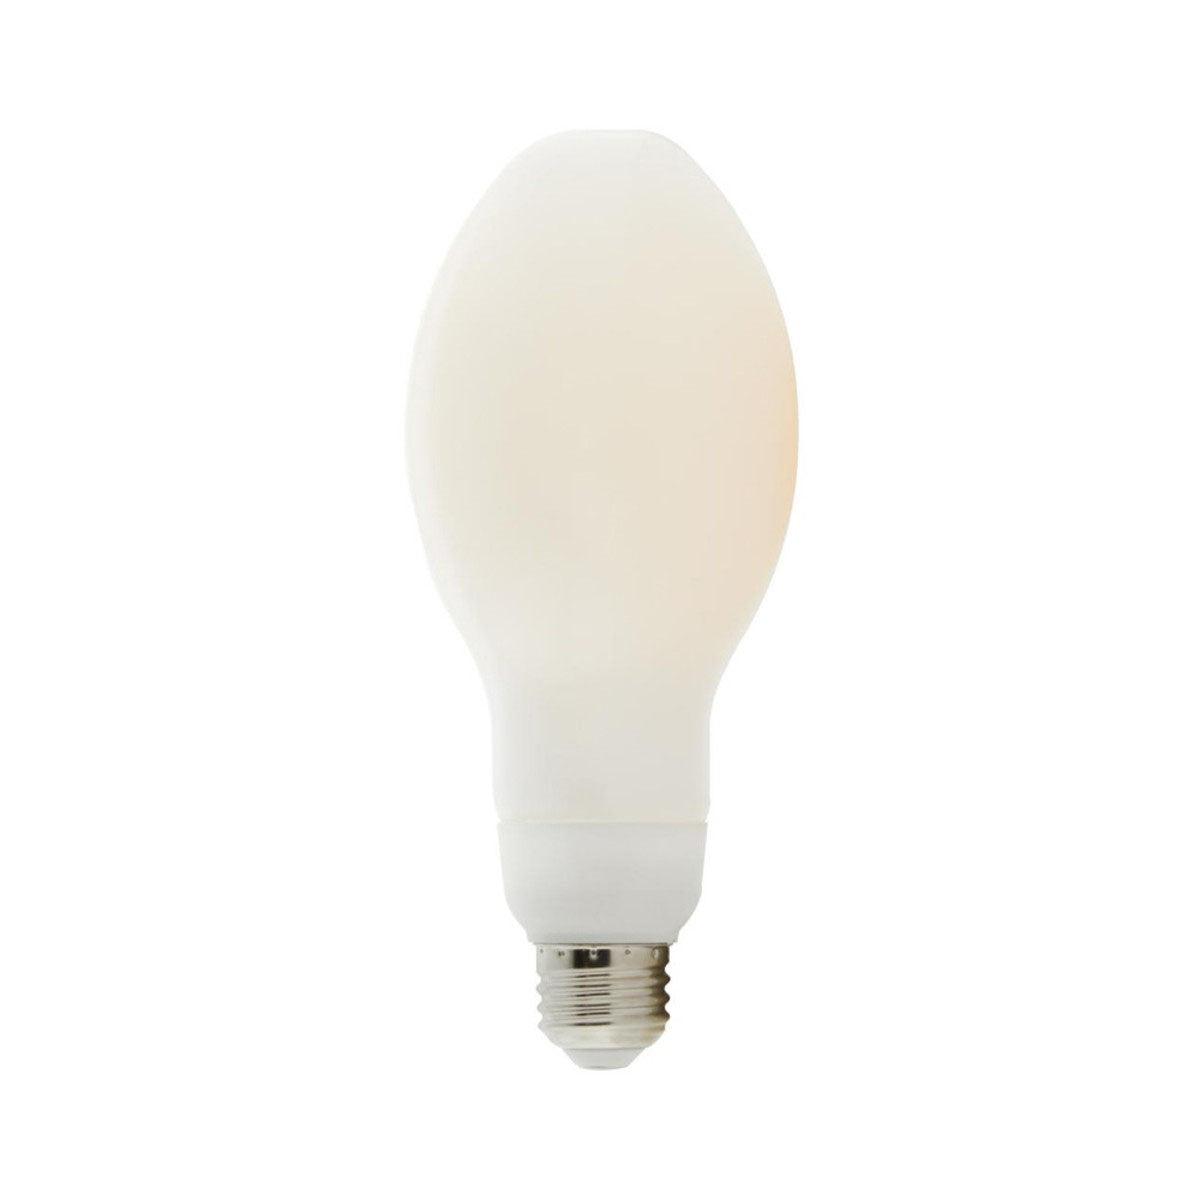 LED ED23 Bulb, 30 Watt, 4000 Lumens, 5000K, E26 Medium Base, Frosted Finish - Bees Lighting